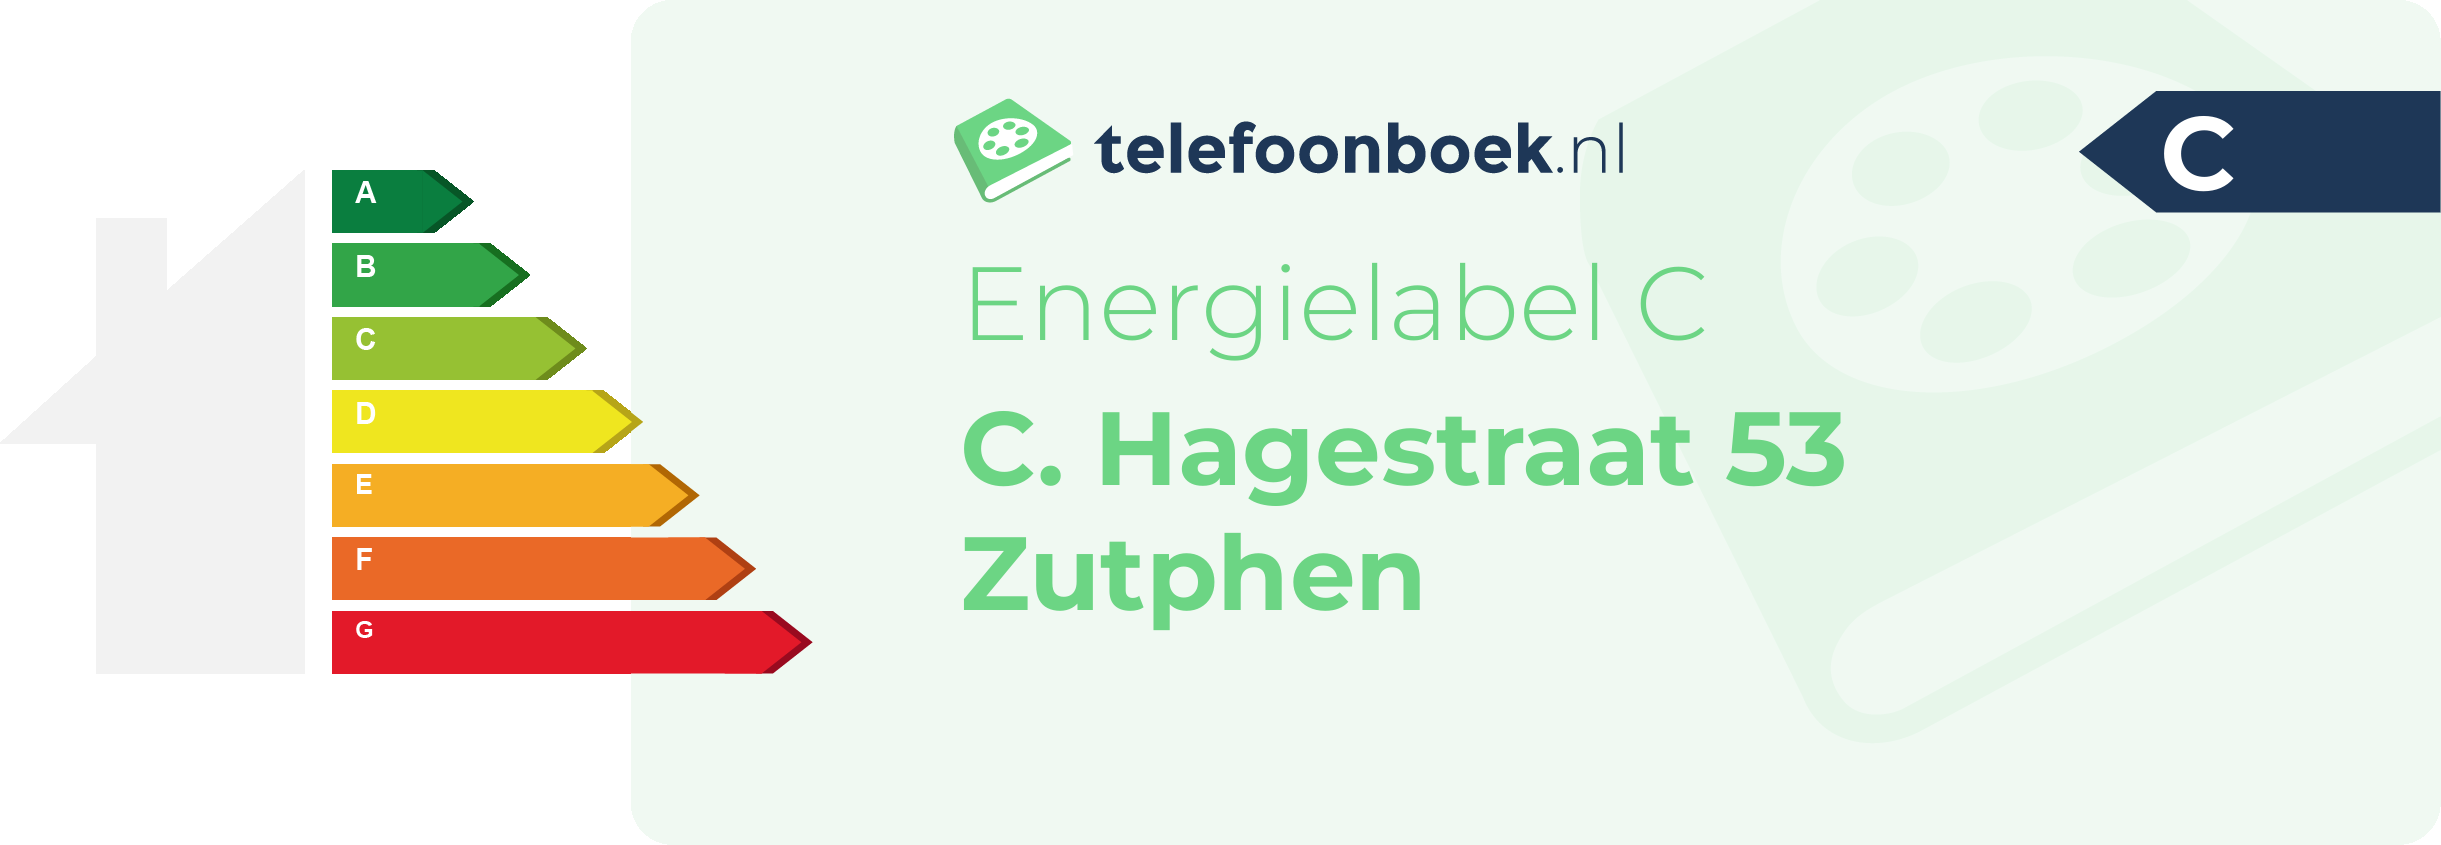 Energielabel C. Hagestraat 53 Zutphen